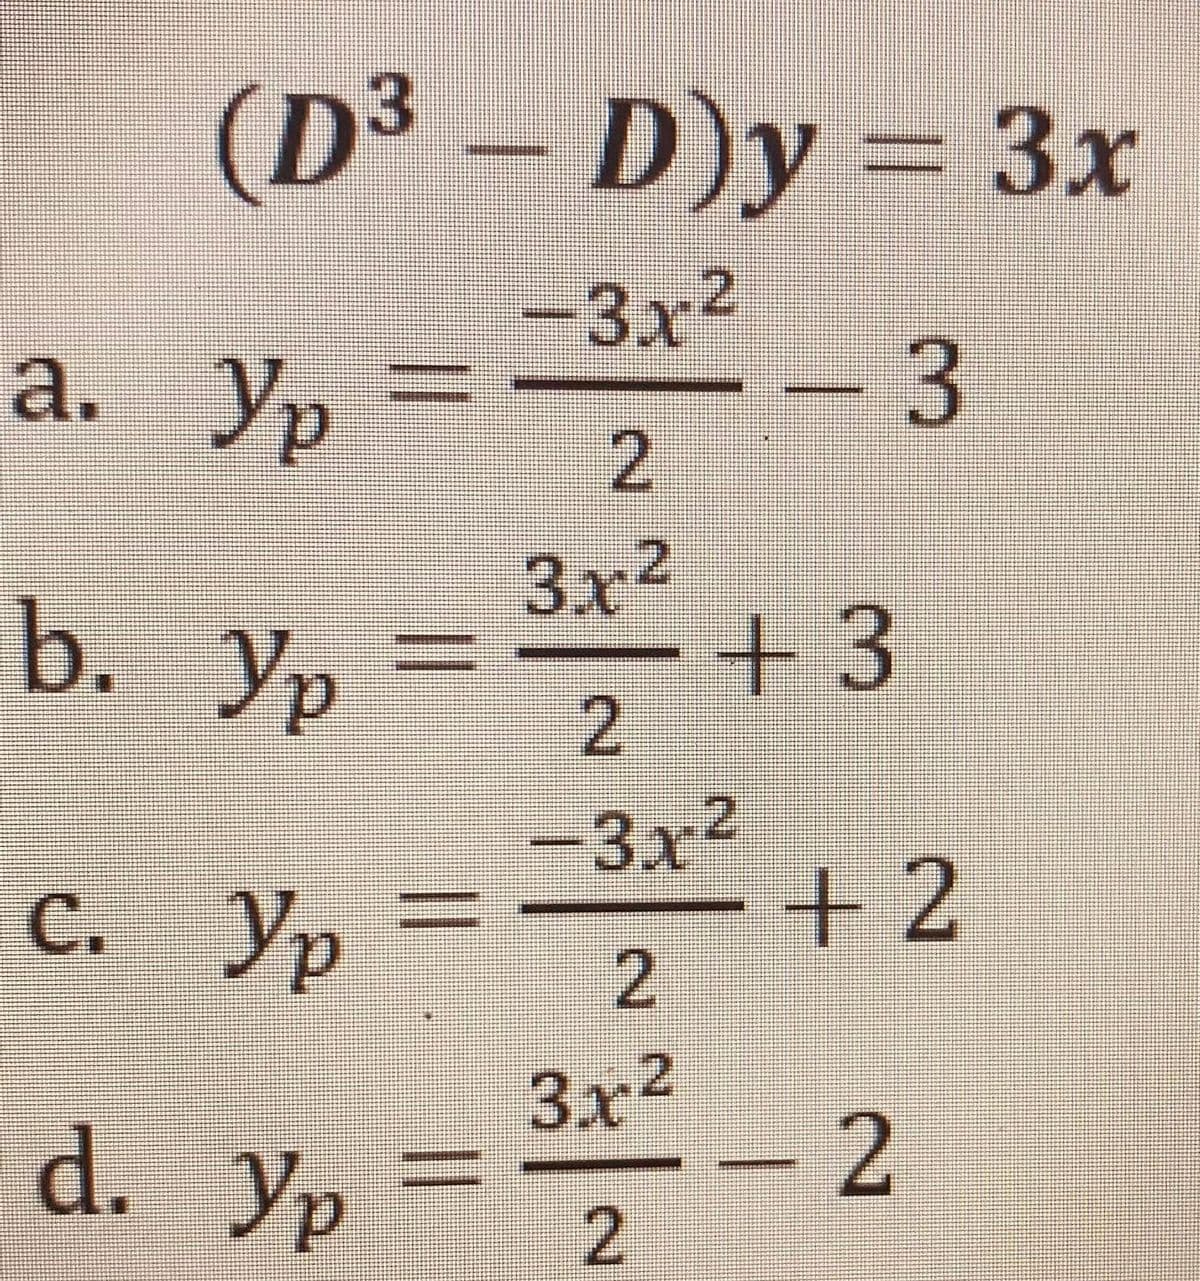 (D³
3
D)y
3x
-3x2
a.
3x2
b. Ур
=ー+
3
-3x2
+2
C.
Ур
d. Уp
3x2
-2
2.
2.
